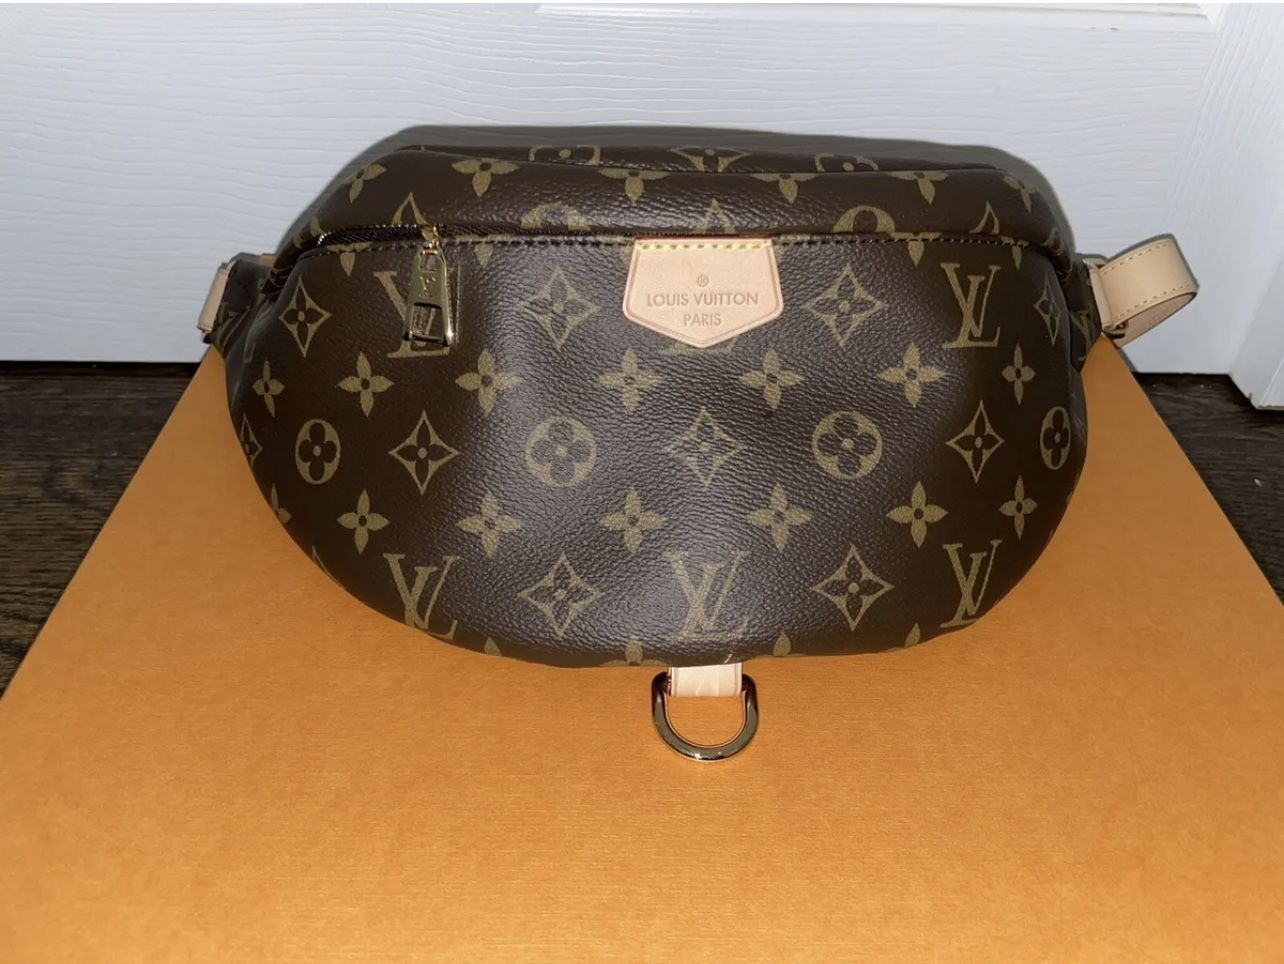 Authentic Louis Vuitton Bug Bag 